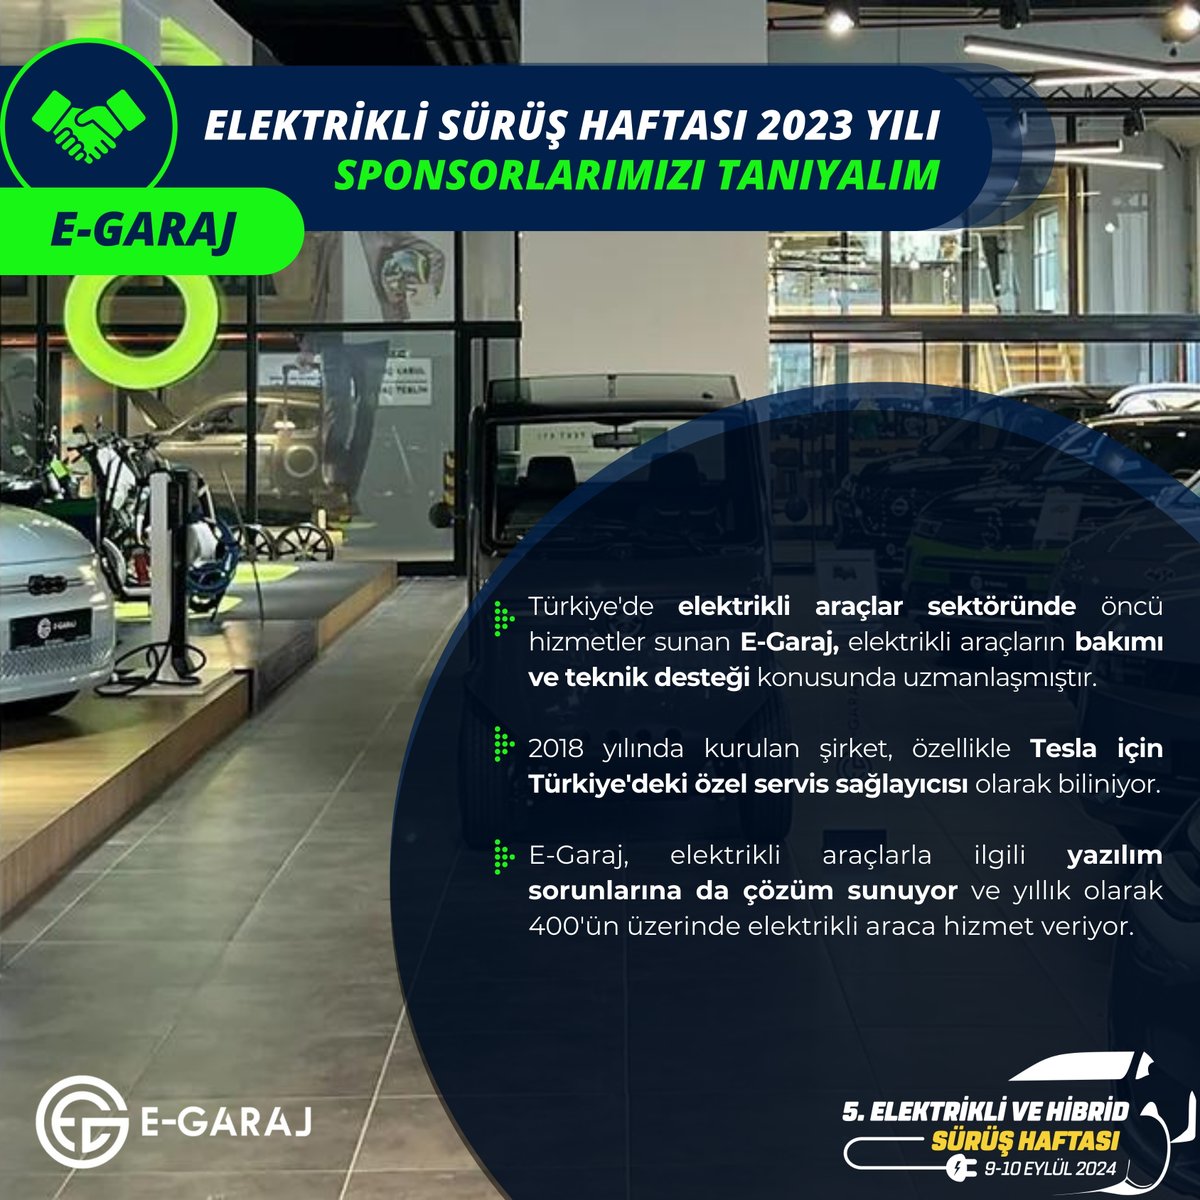 2018 yılında kurulan E-Garaj, Tesla için Türkiye'deki özel servis sağlayıcısı olarak da biliniyor. @ehcars #elektriklisürüşhaftası #elektrikliaraba #electriccars #hybrid #Egaraj